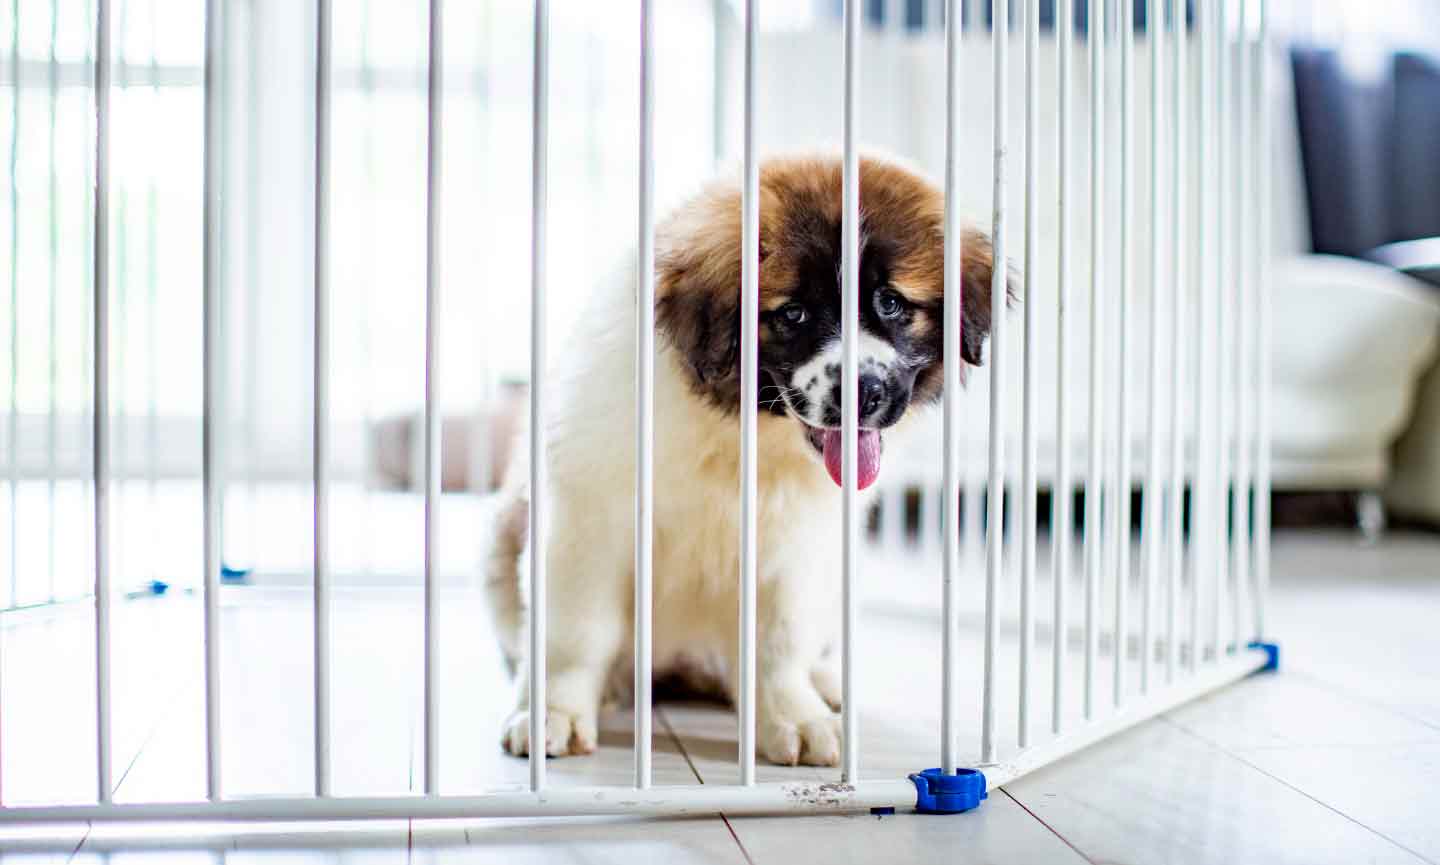 A puppy inside a playpen